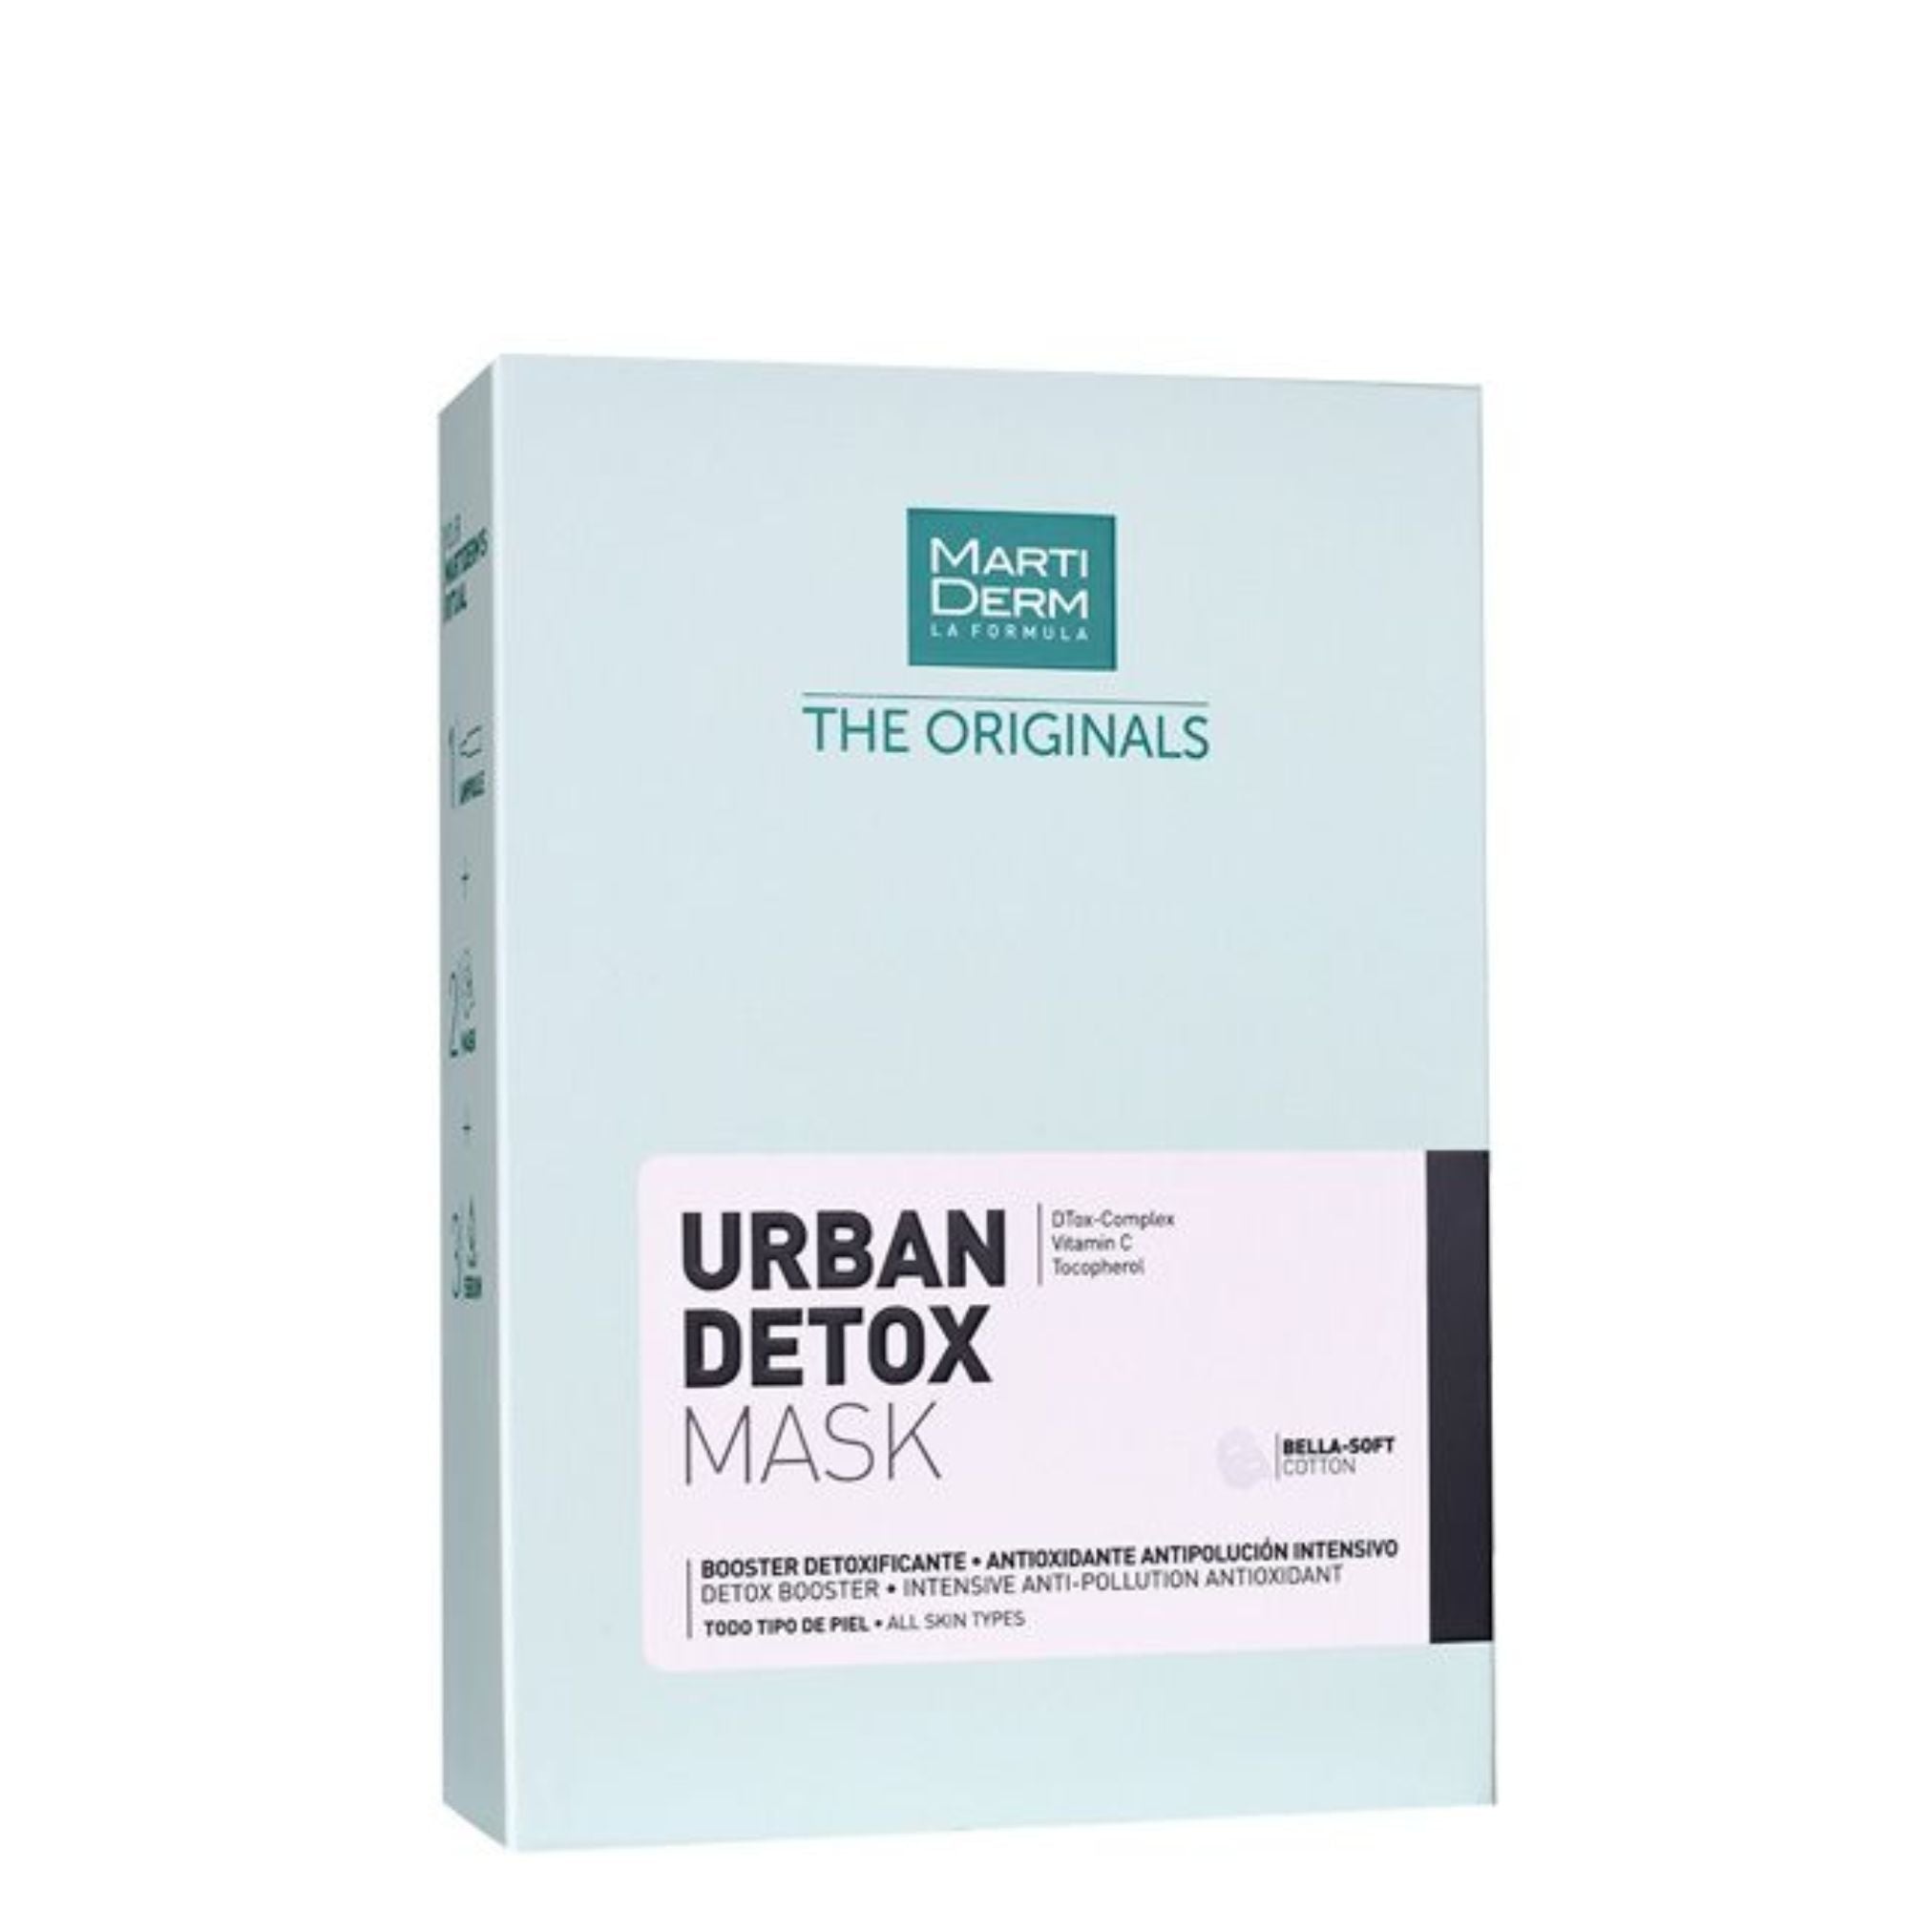 Martiderm The Originals Urban Detox Mask x10